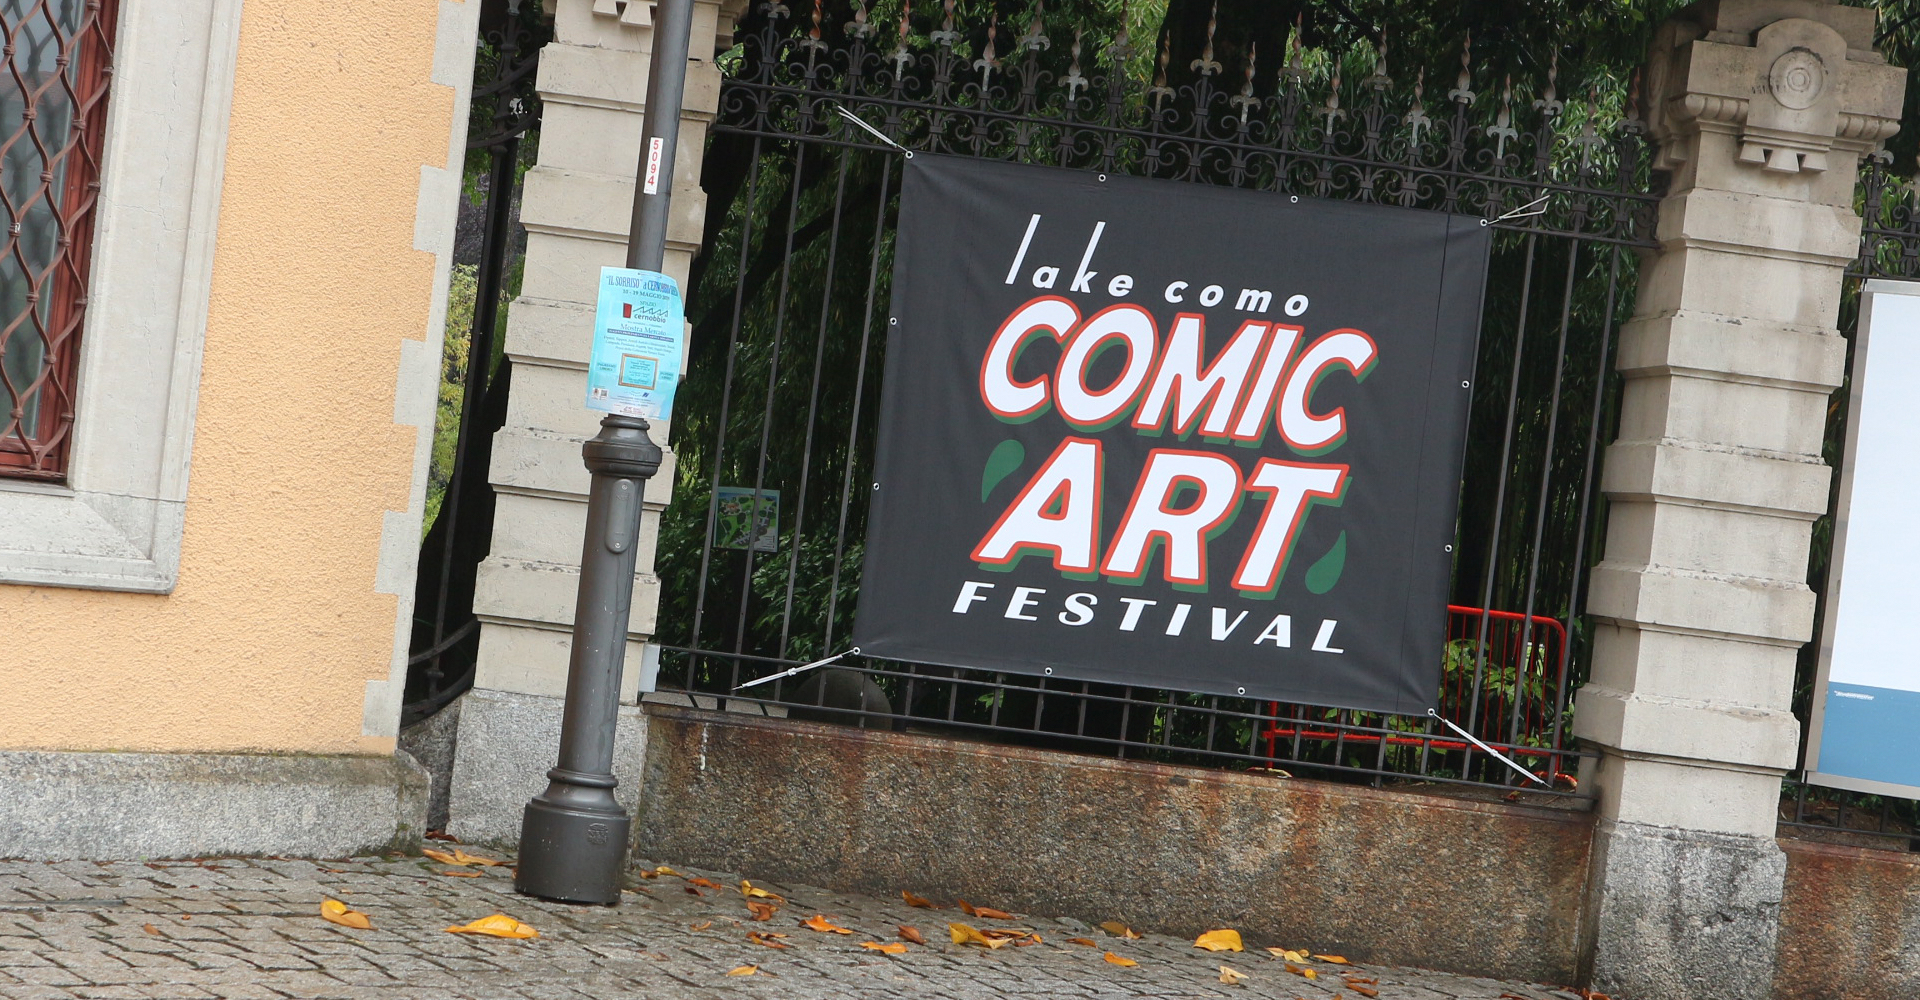 Lake Como Comic Art Festival